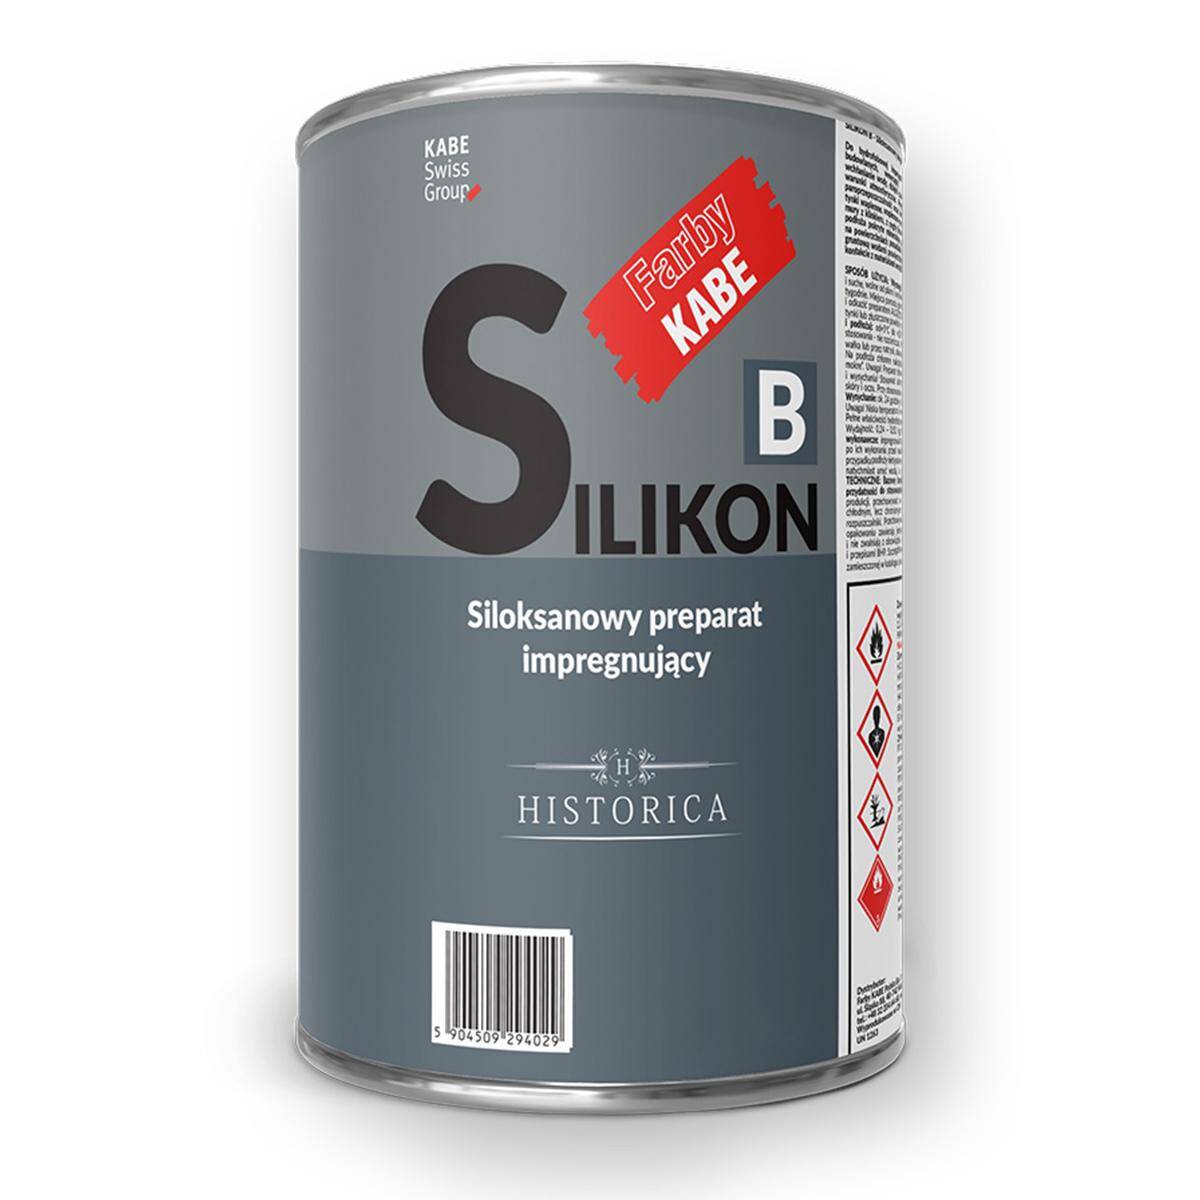 Preparat impregnujący siloksanowy Kabe SILIKON B 0,75 kg